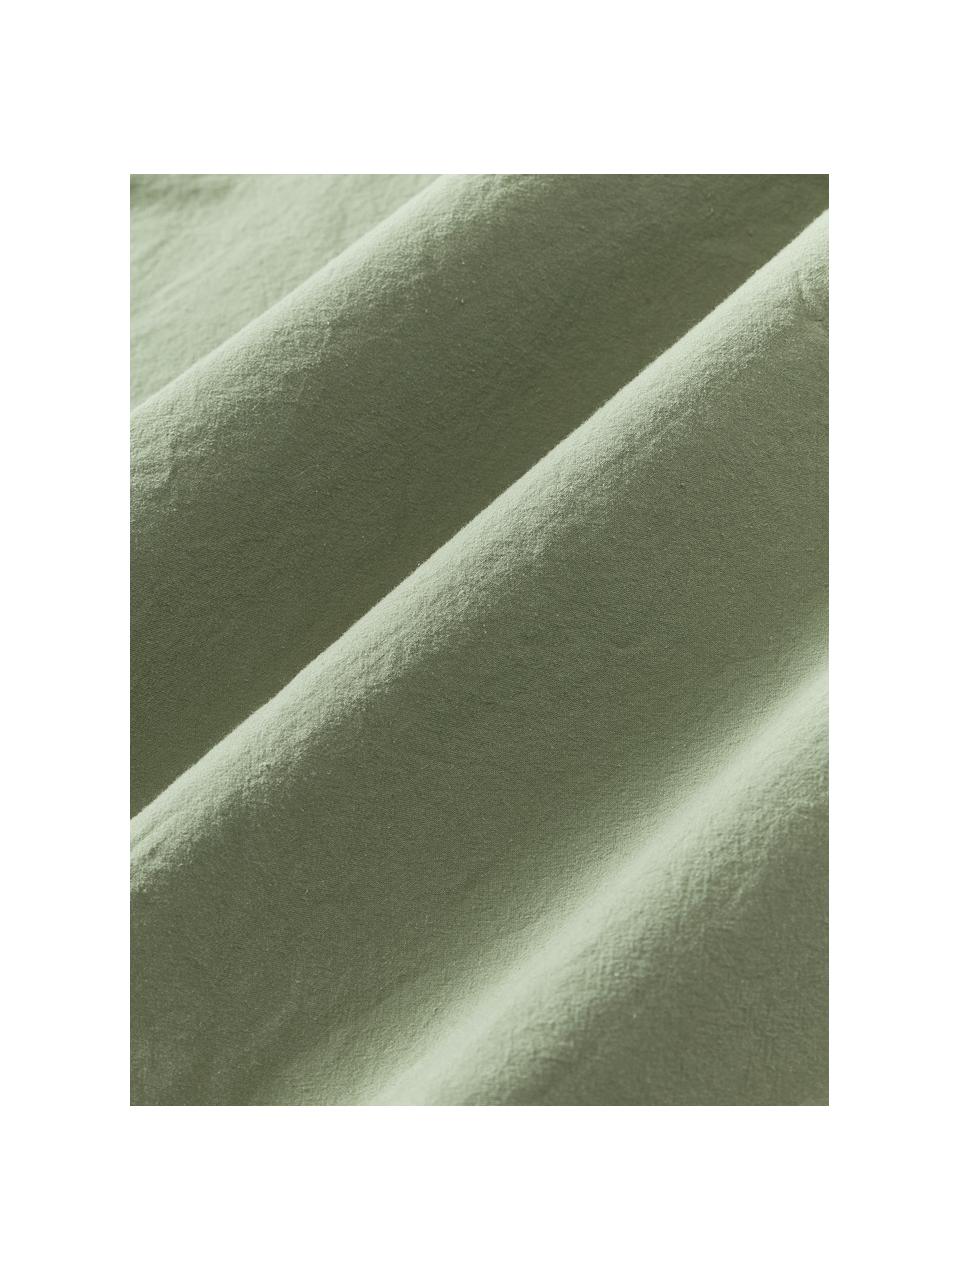 Taie d'oreiller en coton délavé Darlyn, 100 % coton
150 fils au pouce carré, qualité Standard

La literie en coton procure une agréable sensation de douceur sur la peau, absorbe bien l'humidité et convient aux personnes allergiques.

L'aspect robuste et irrégulier de stonewash provient d'un procédé de lavage spécial. Il rend également le tissu doux et souple au toucher, tout en lui procurant un aspect froissé naturel, ne nécessitant pas de repassage.

Le matériau est certifié STANDARD 100 OEKO-TEX®, 4265CIT, CITEVE., Vert olive, larg. 50 x long. 70 cm